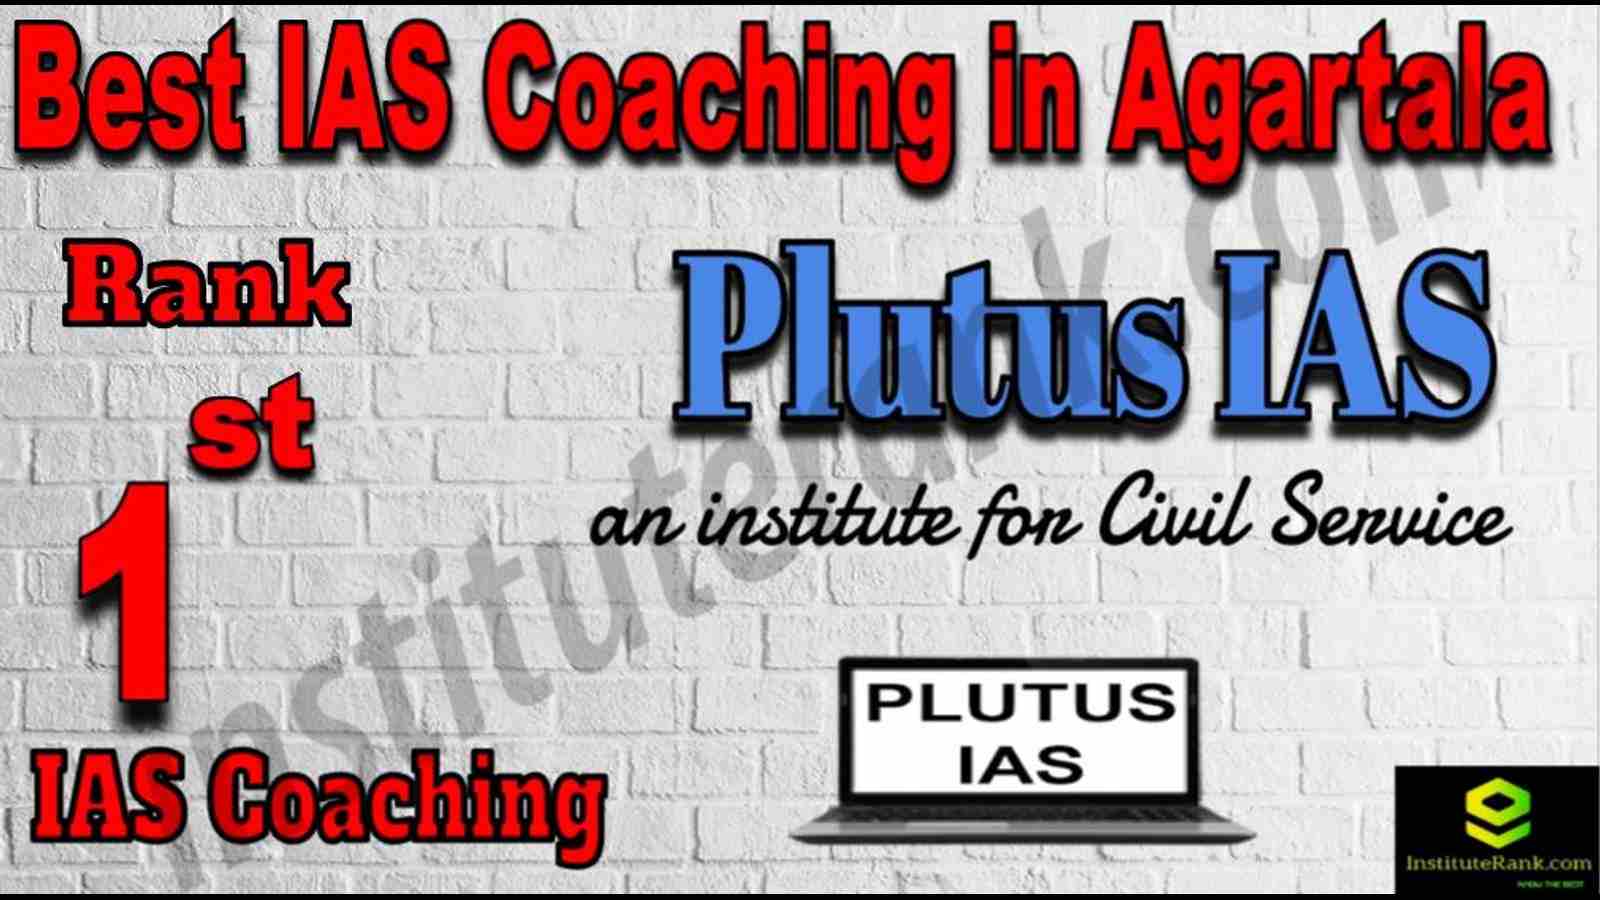 1st Best IAS Coaching in Agartala